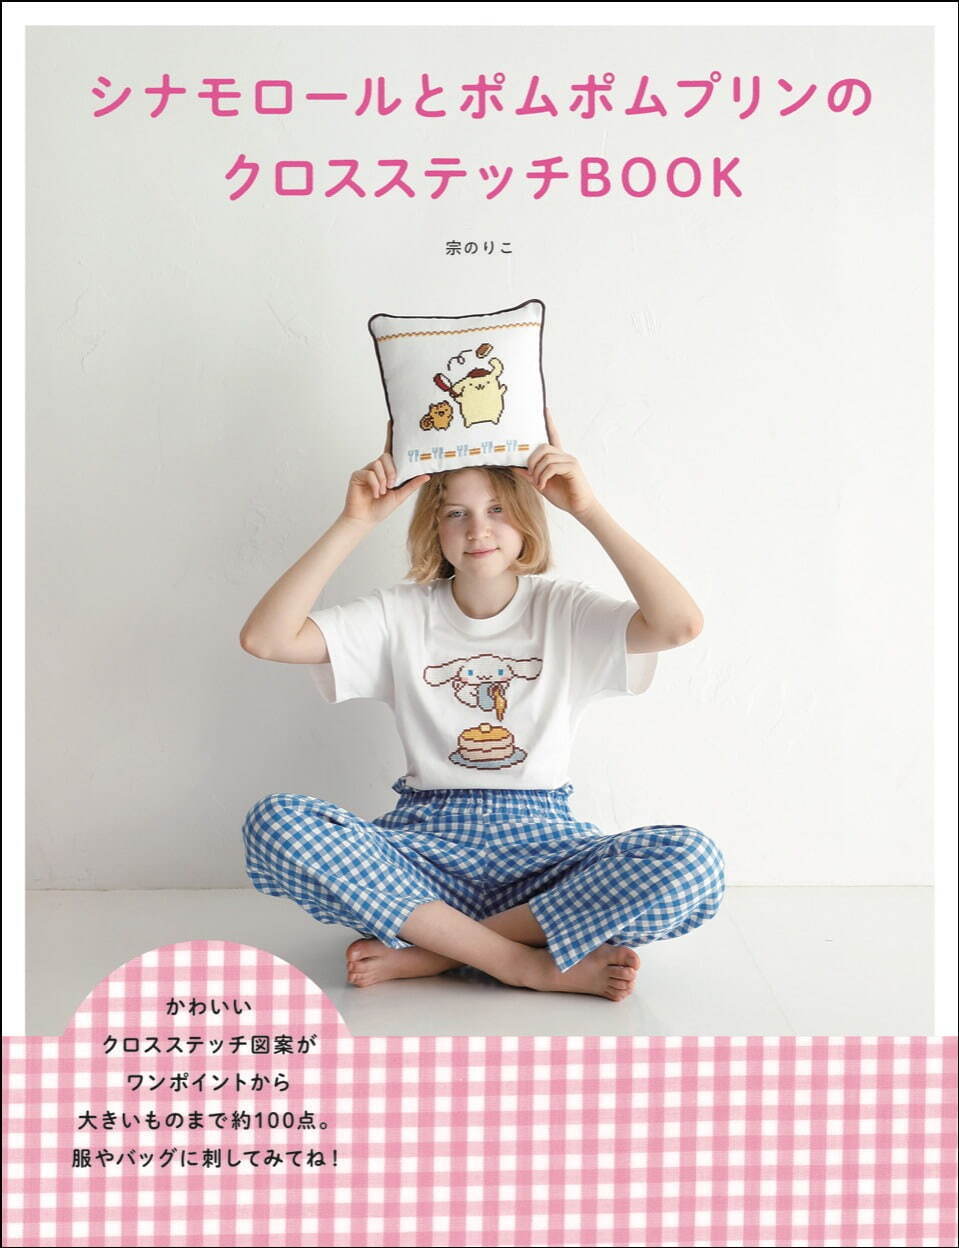 『シナモロールとポムポムプリンのクロスステッチBOOK』1,540円